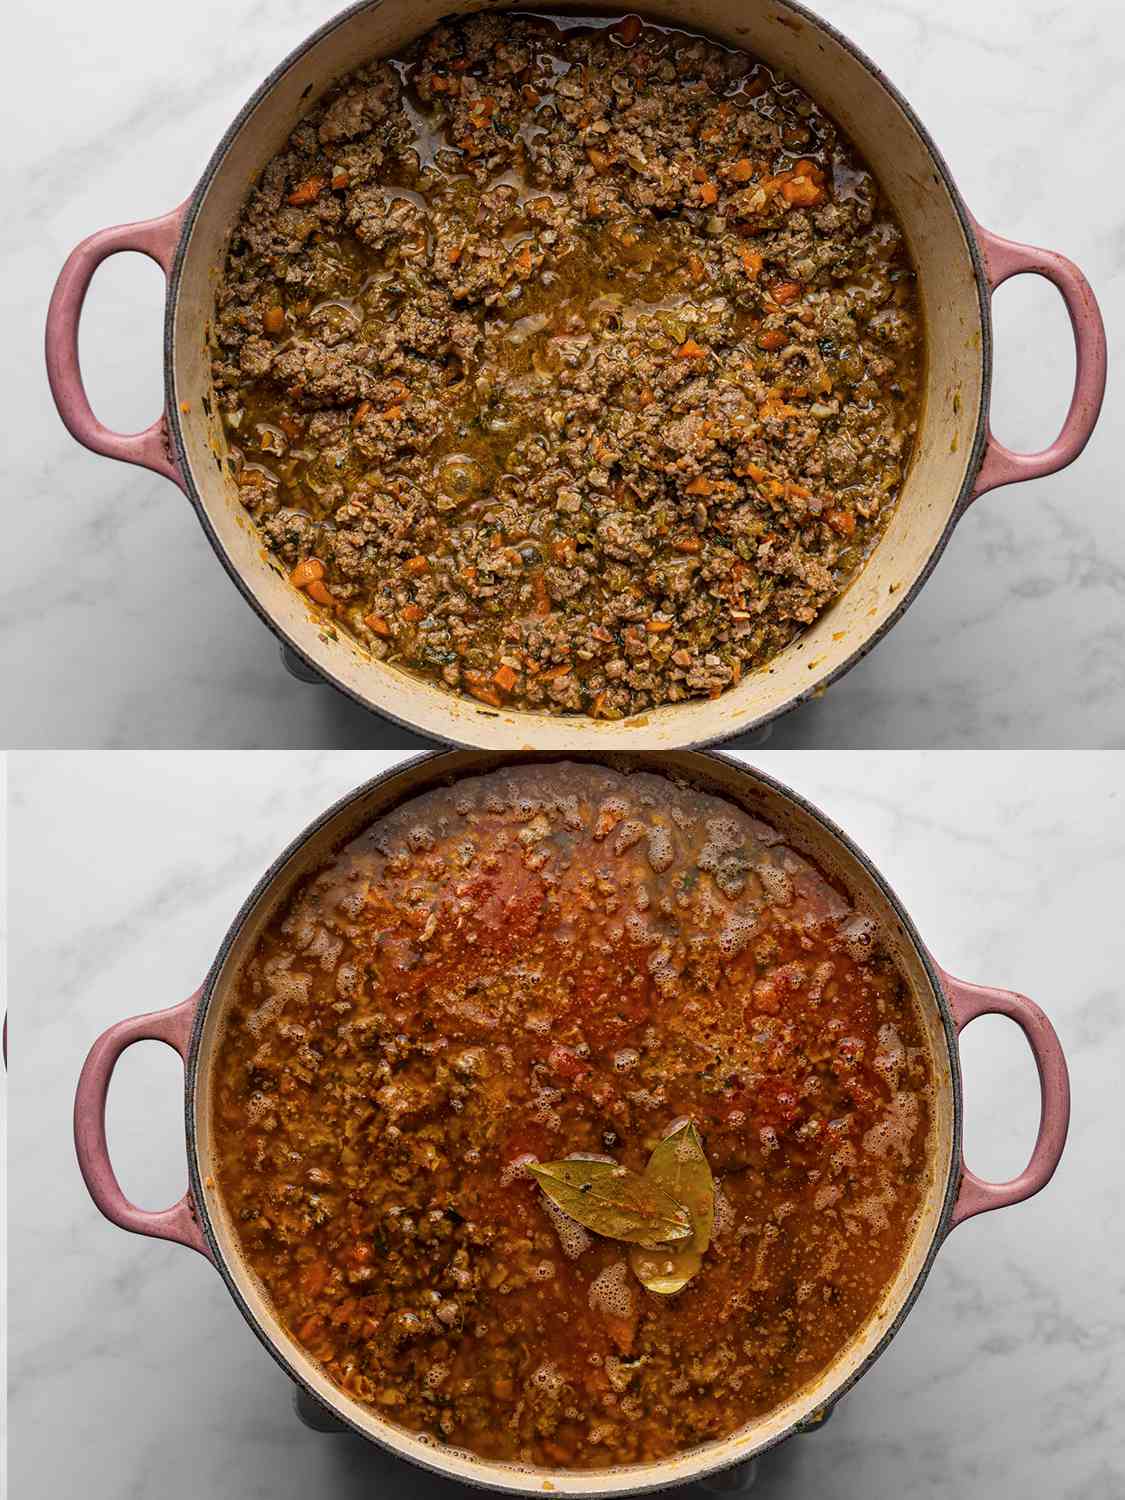 两幅图像的拼贴画。上面的图片显示的是加了酒的肉，大部分的酒都蒸发了。下图显示的是备用高汤、西红柿、牛奶和月桂叶加入荷兰烤箱。gydF4y2Ba